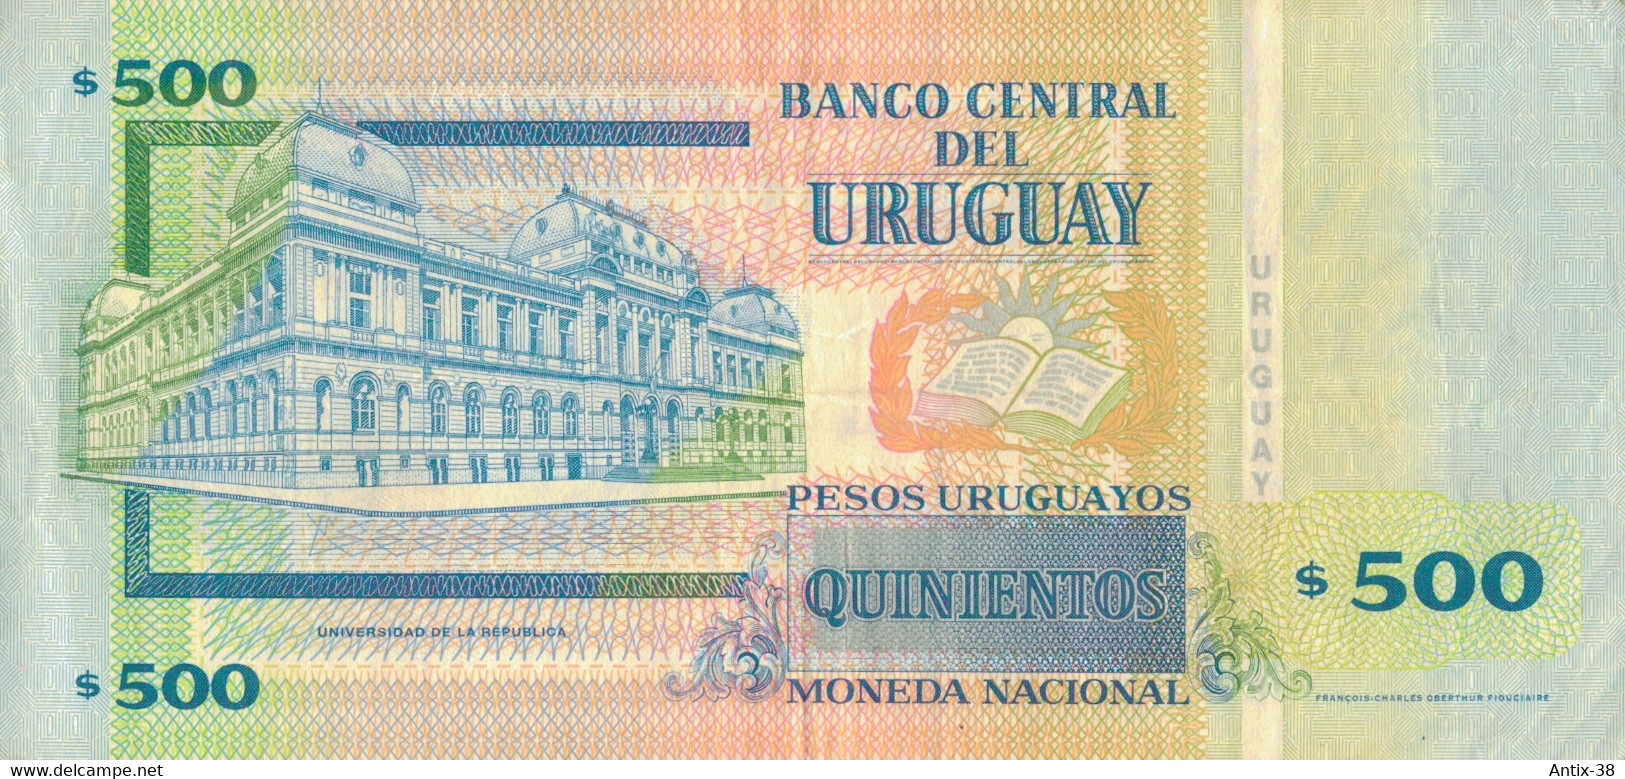 K29 - URUGUAY - Billet De 500 PESOS URUGUAYOS - Uruguay